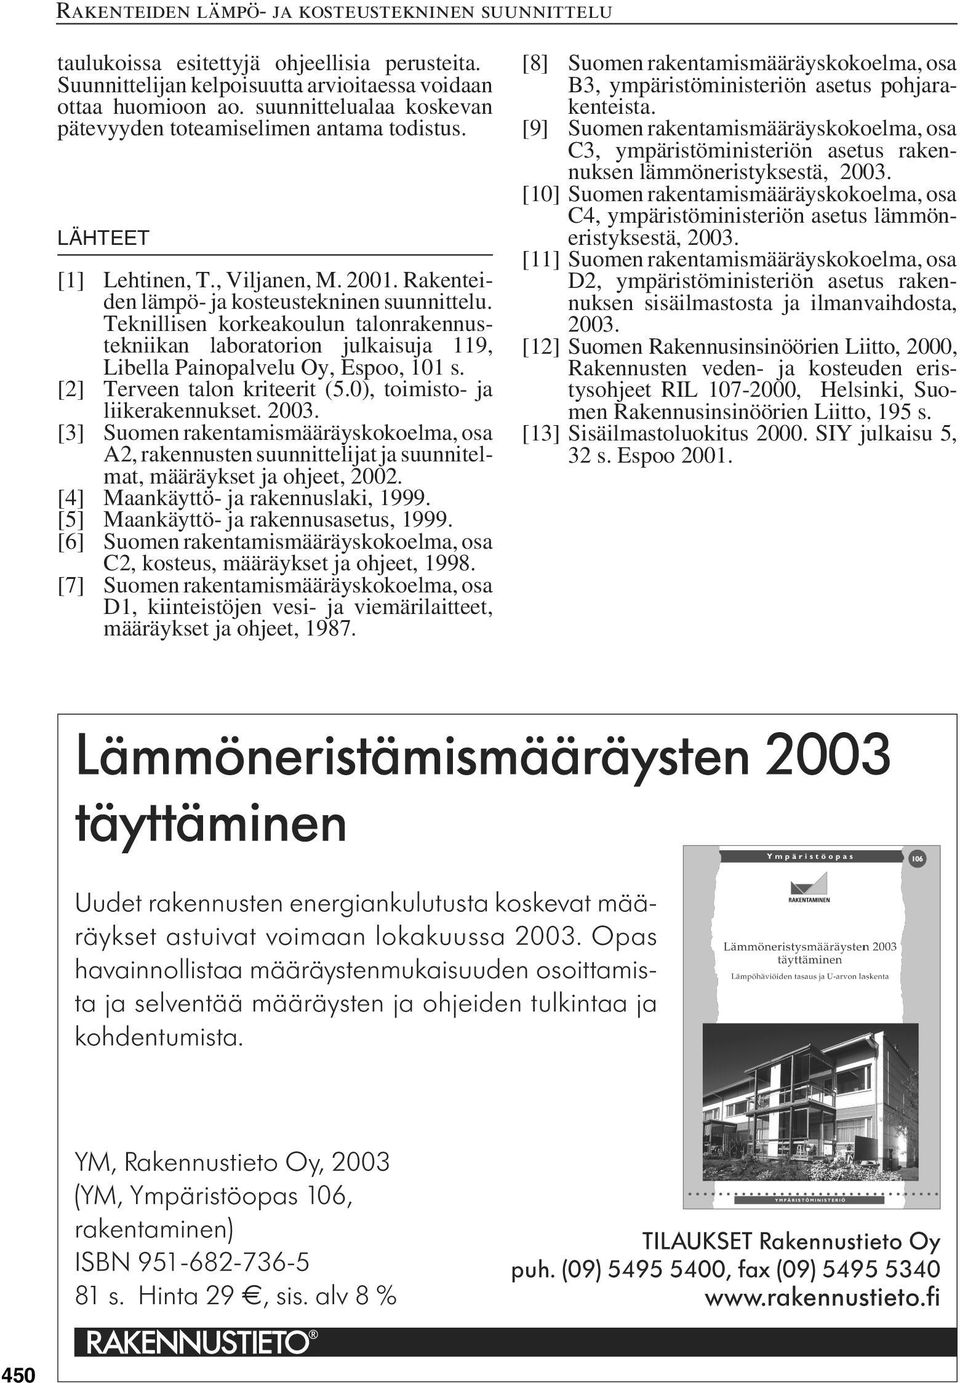 Teknillisen korkeakoulun talonrakennustekniikan laboratorion julkaisuja 119, Libella Painopalvelu Oy, Espoo, 101 s. [2] Terveen talon kriteerit (5.0), toimisto- ja liikerakennukset. 2003.